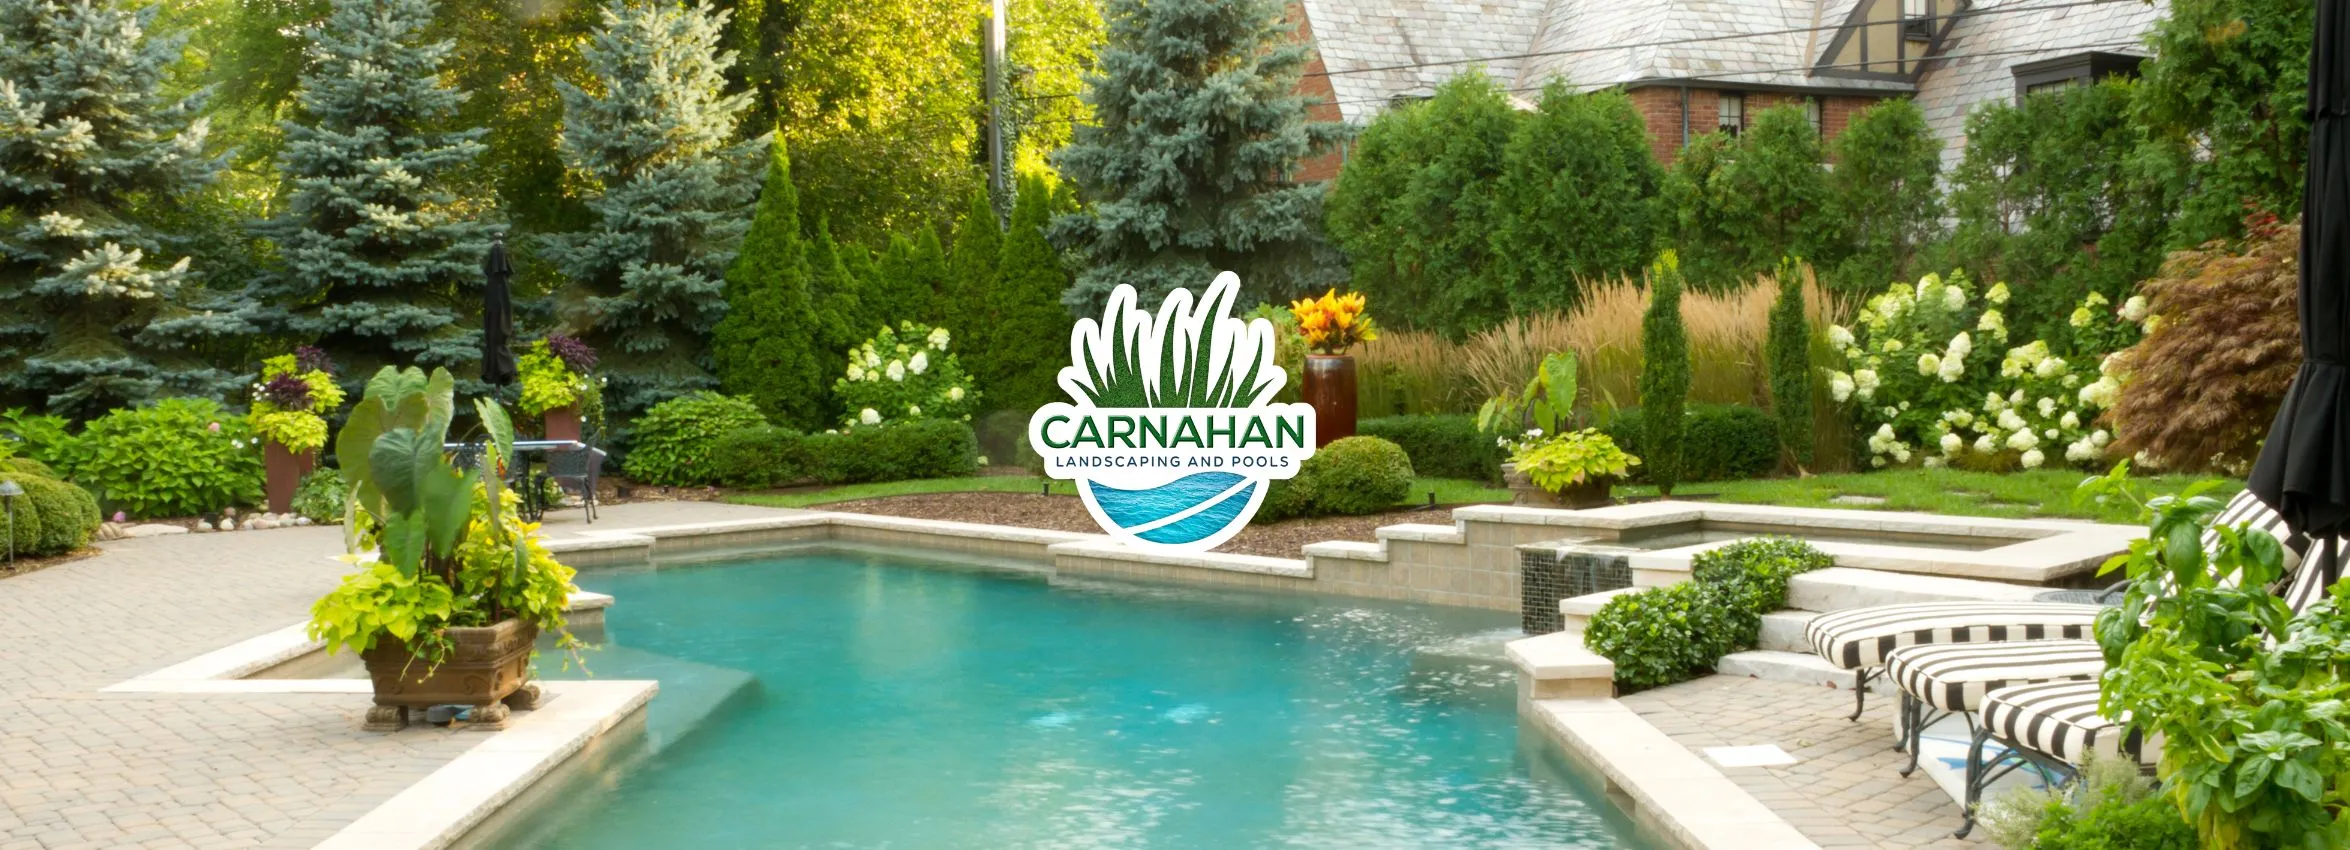 Carnahan-Landscaping-and-Pools_Desktop_ET-